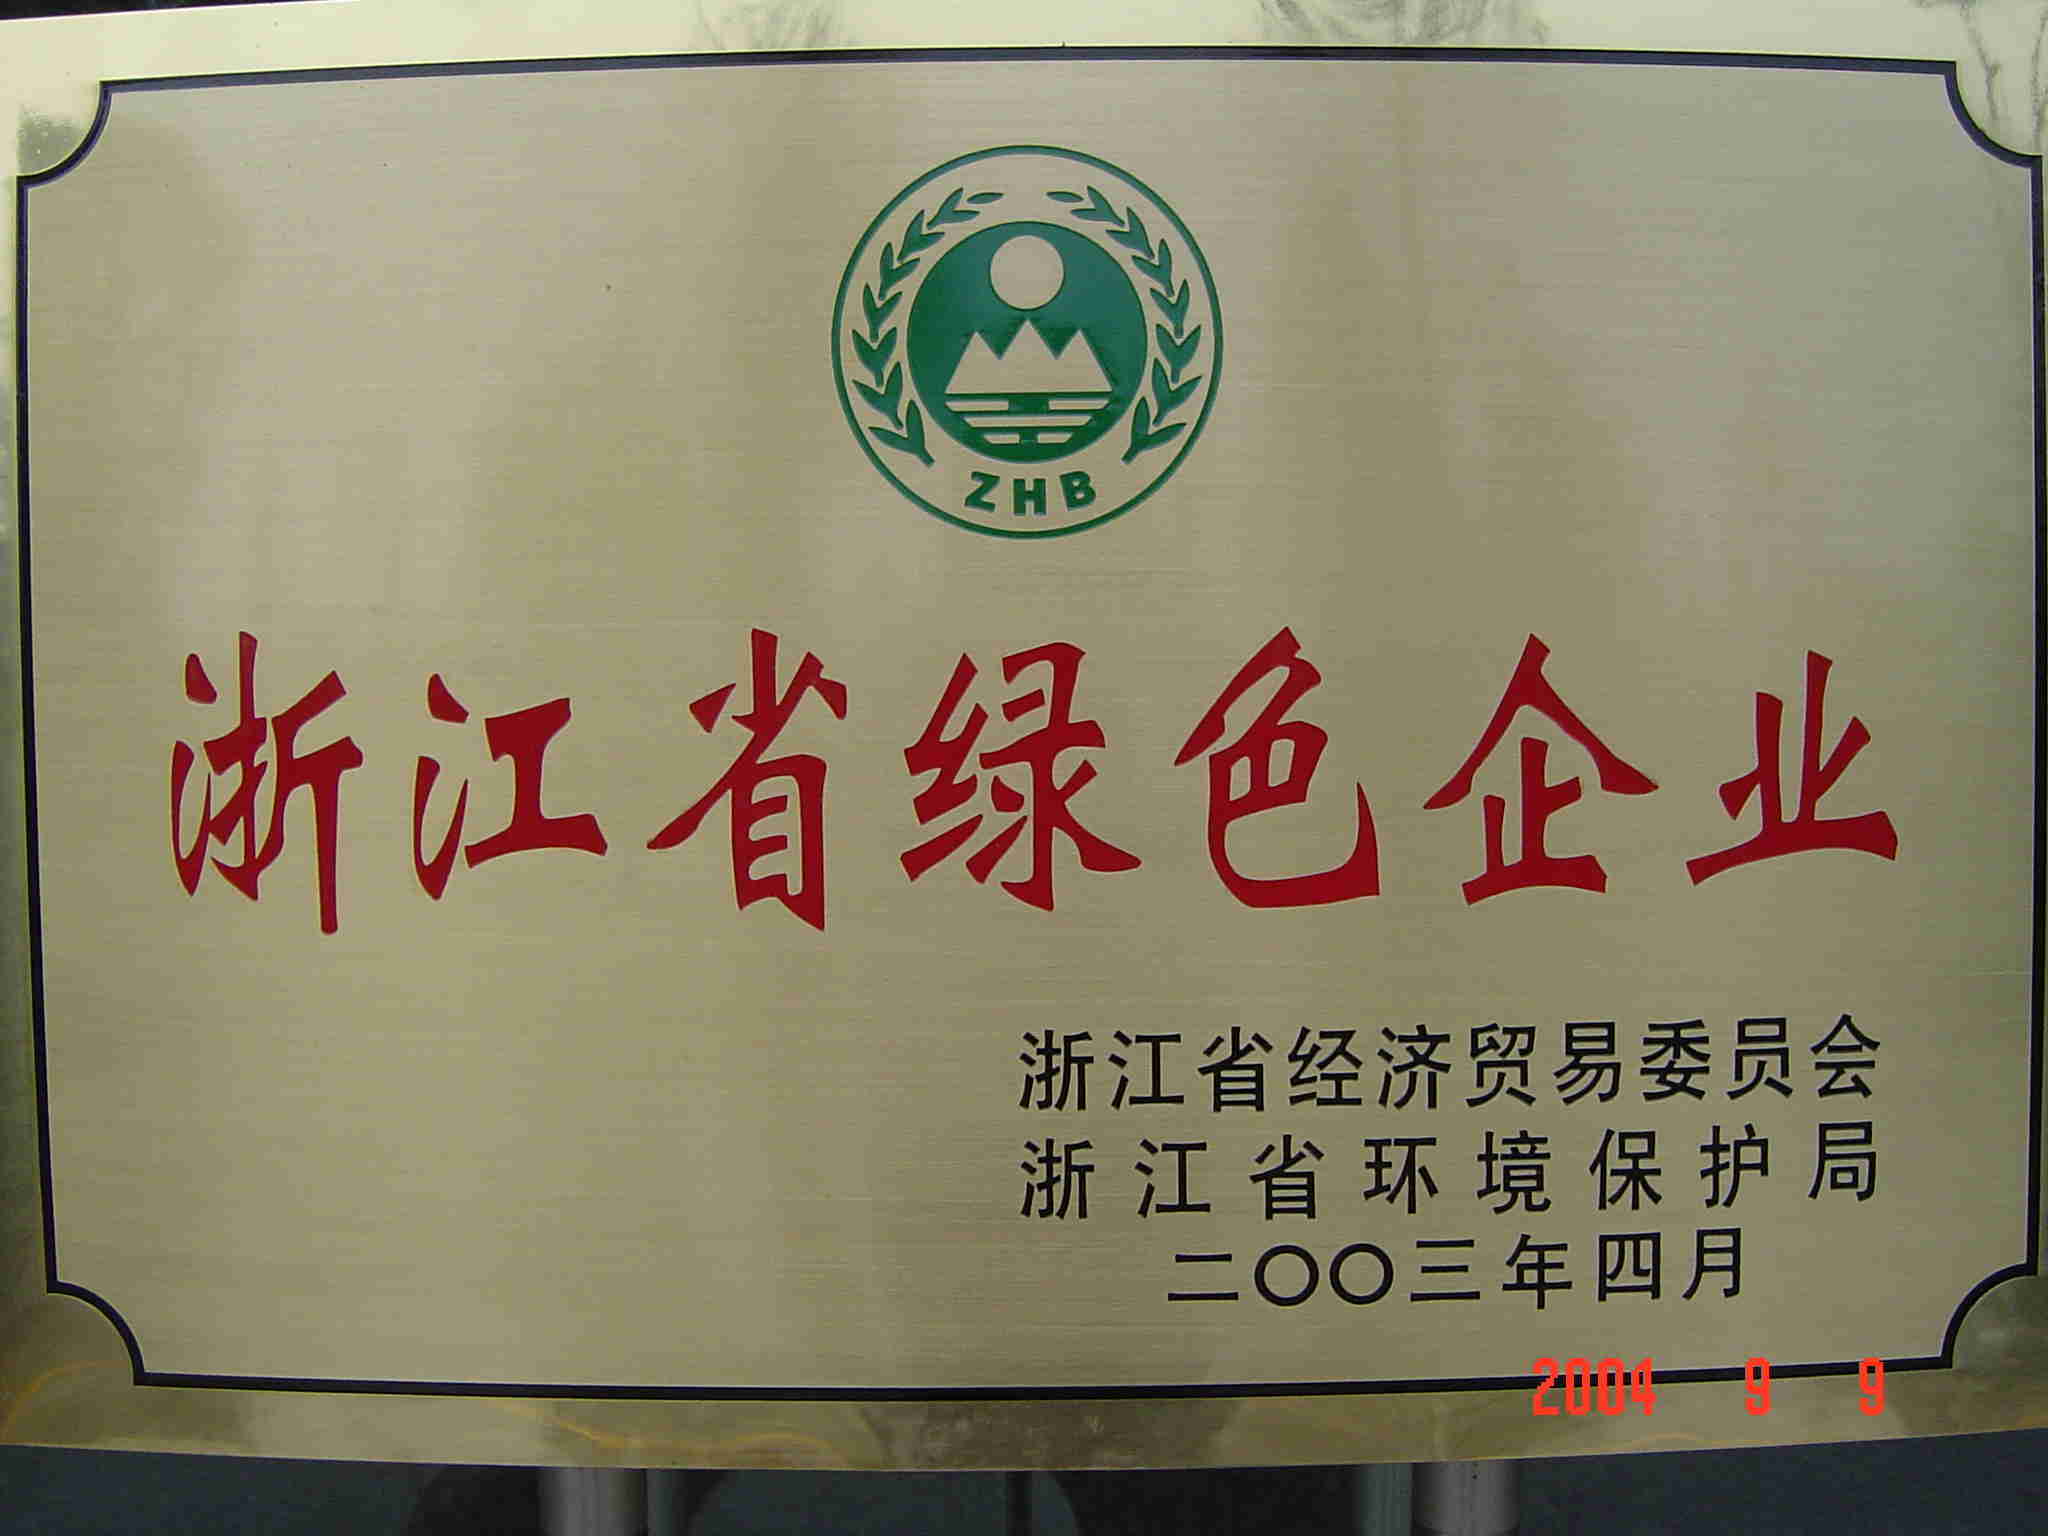 Zhejiang green enterprise